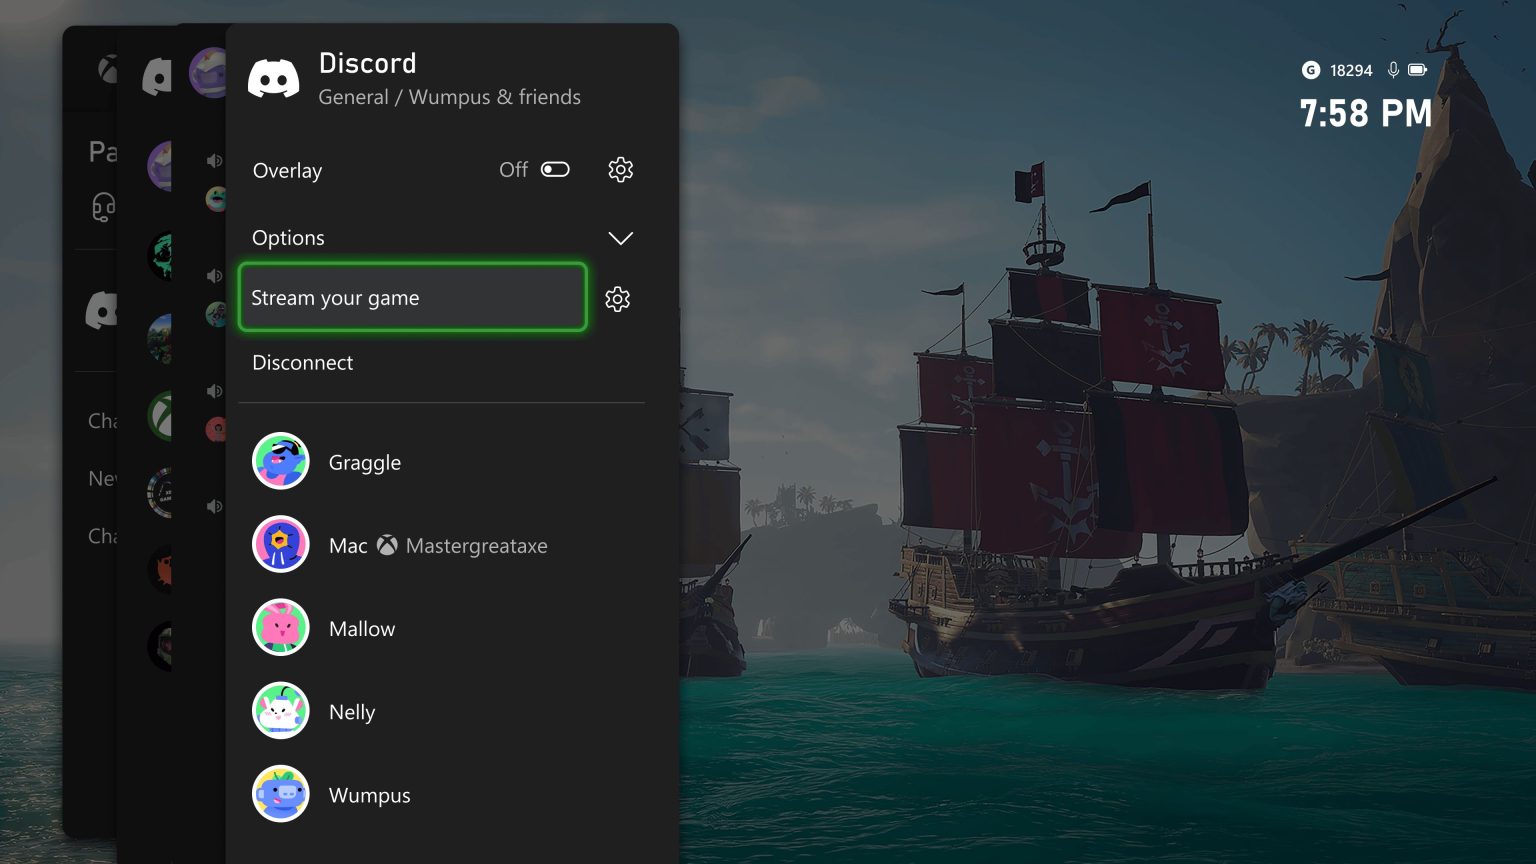 Microsoft hat angekündigt, dass Xbox-Nutzer ab sofort ihr Gameplay über Discord direkt von der Konsole aus streamen können. Die Funktion ist jetzt für Xbox Insider-Mitglieder verfügbar